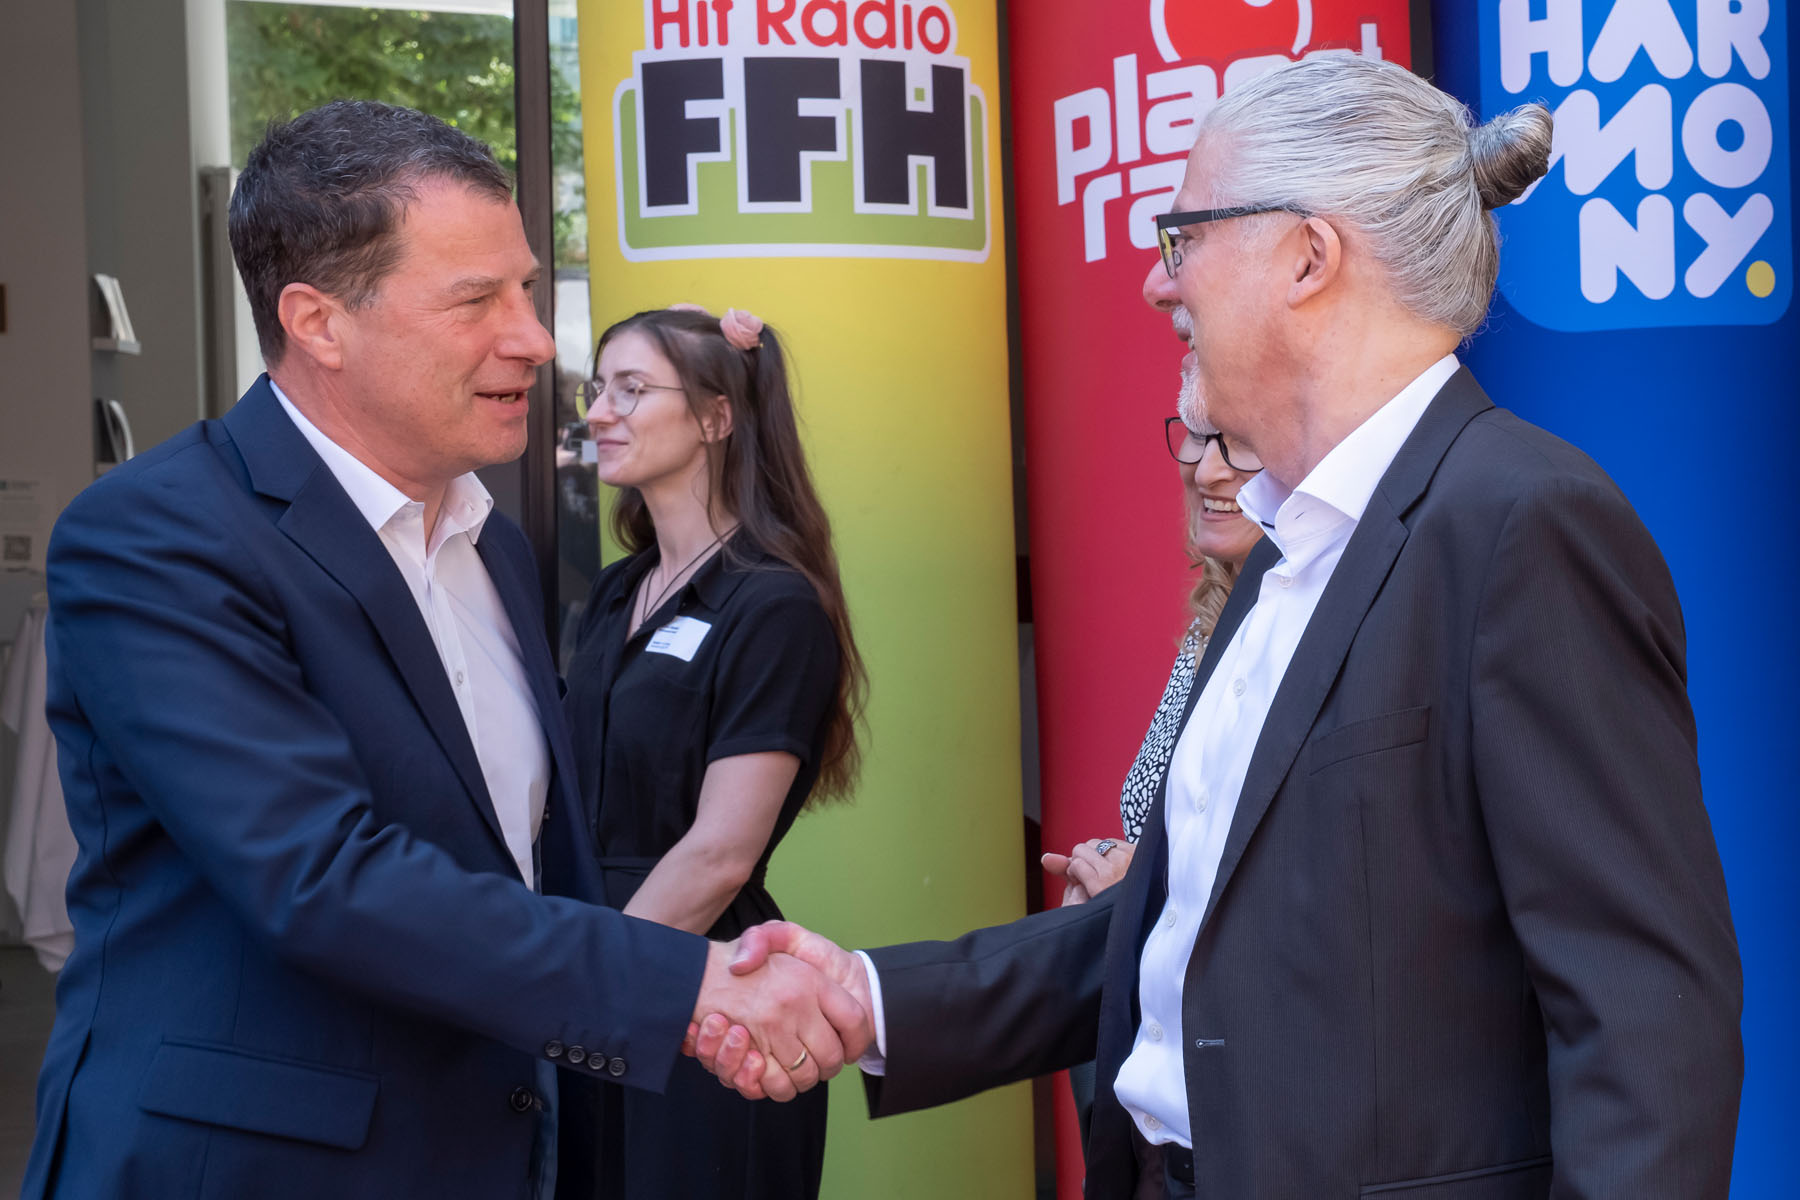 Begrüßung und Handshake mit Ralf Stettner vom Hessischen Innenministerium | ©Guido Schiefer